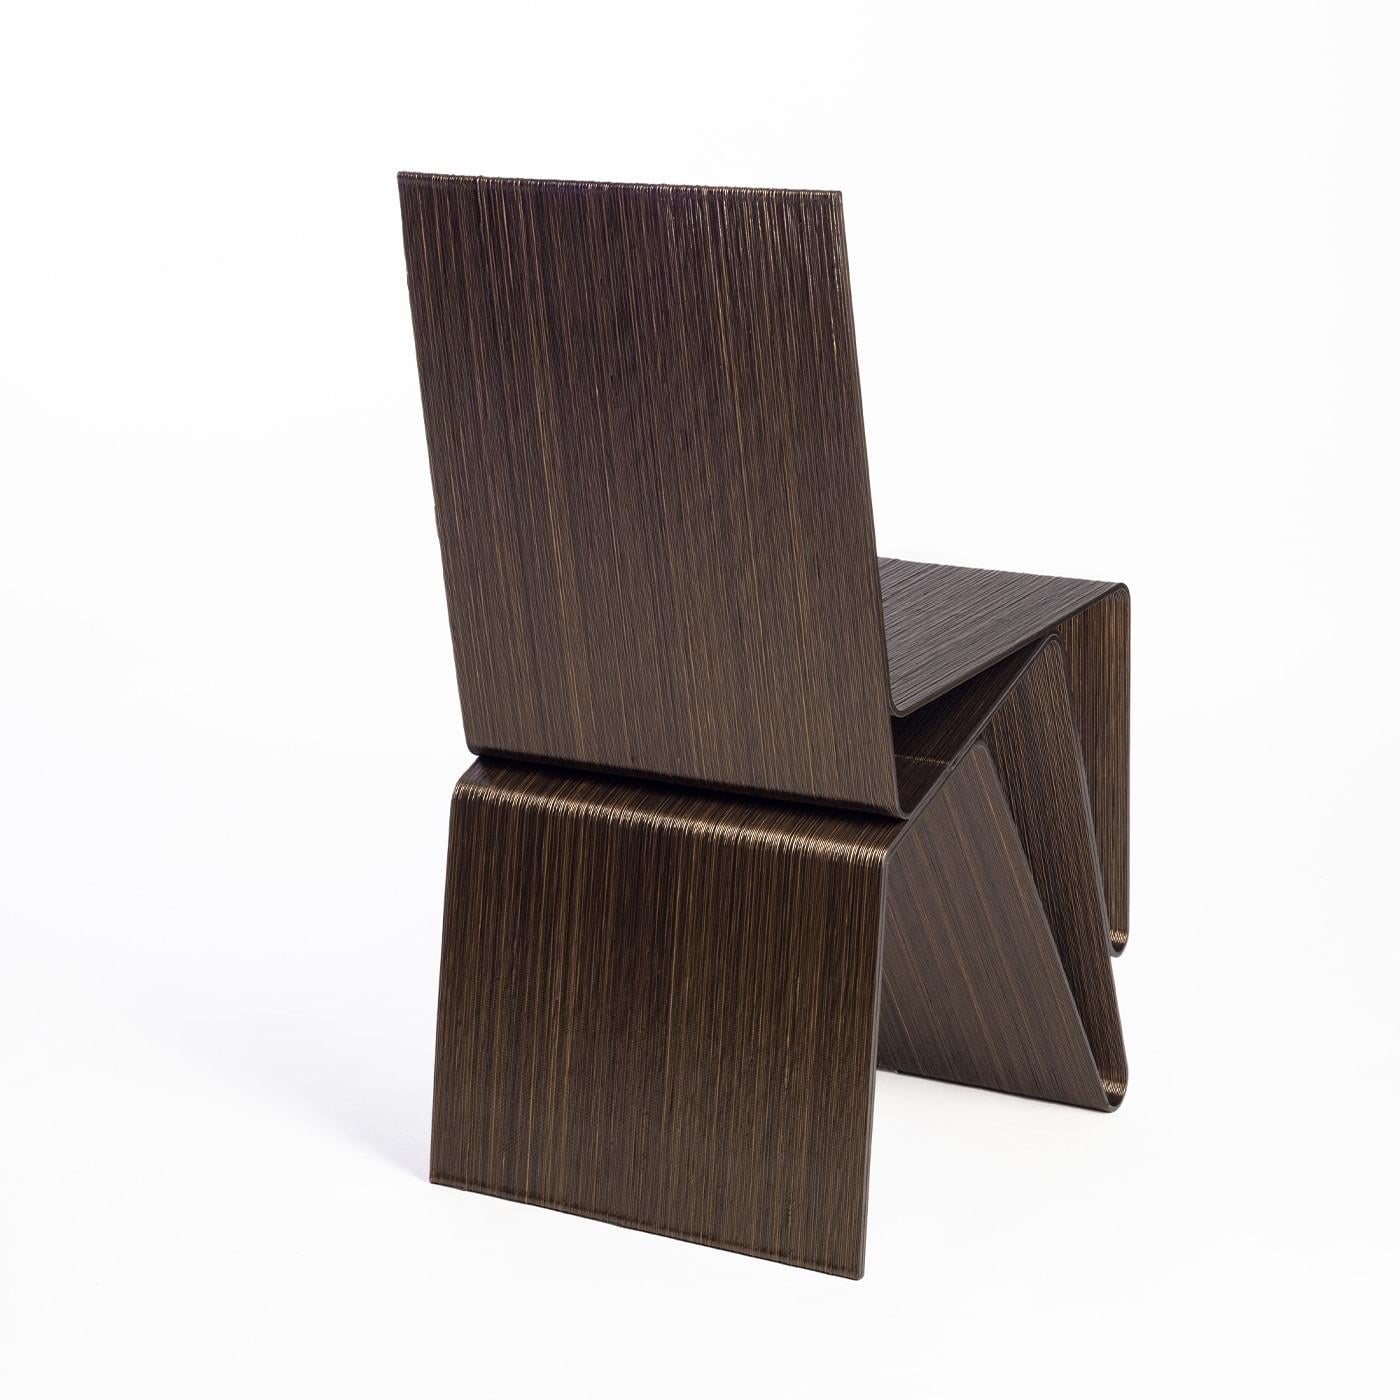 Sinueuse et essentielle, la chaise Pantelleria est réalisée à partir de deux bandes de matériau continu qui reposent l'une sur l'autre. Le dossier et l'assise bougent avec la même harmonie, se conformant aux différentes fonctions et résistances La